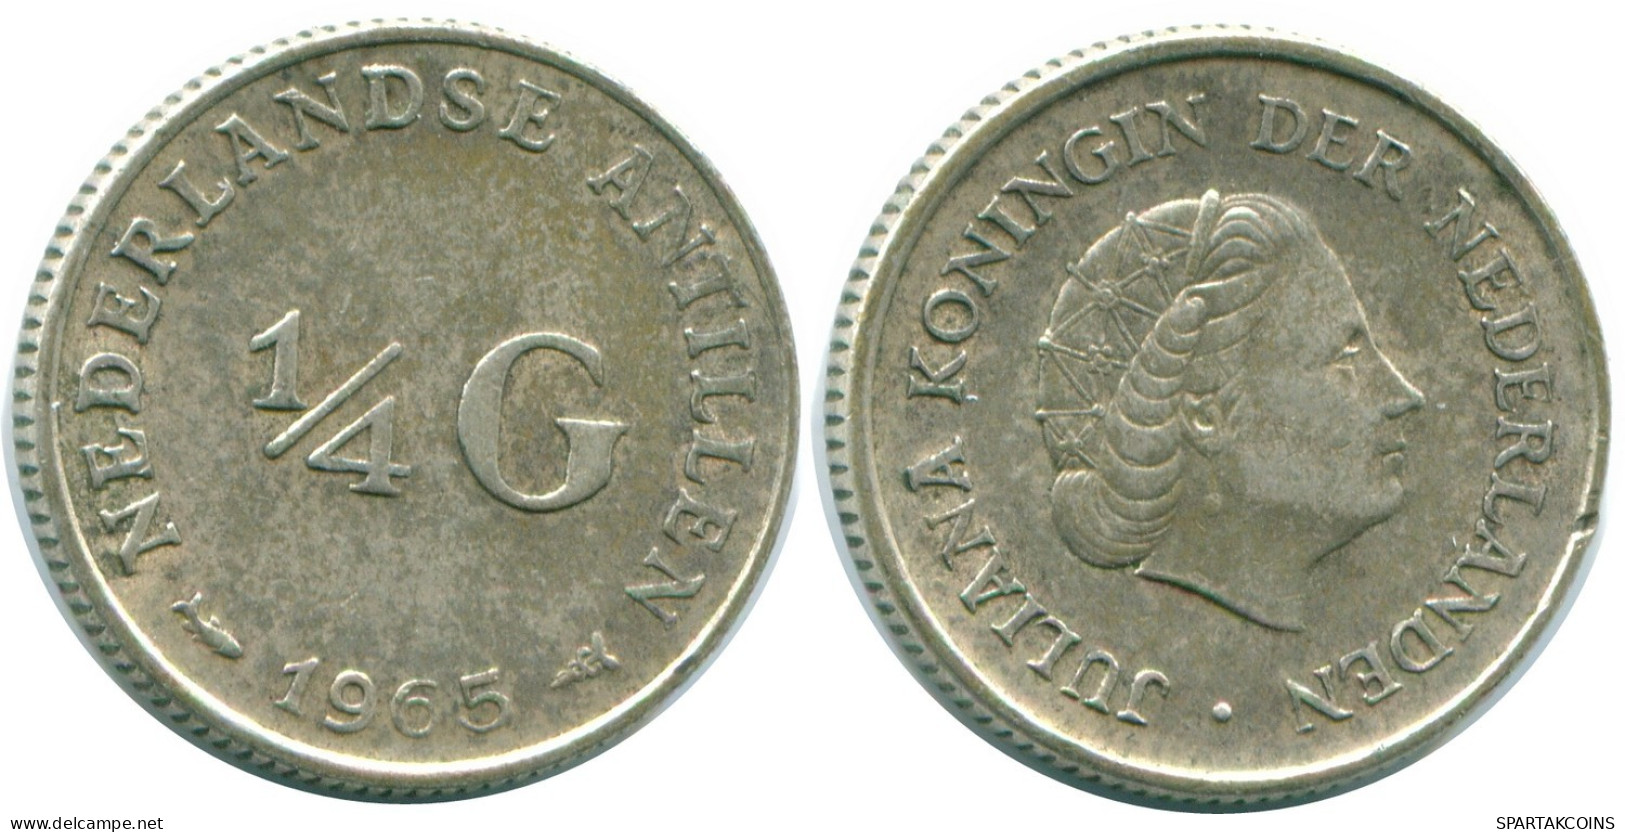 1/4 GULDEN 1965 NIEDERLÄNDISCHE ANTILLEN SILBER Koloniale Münze #NL11386.4.D.A - Antilles Néerlandaises